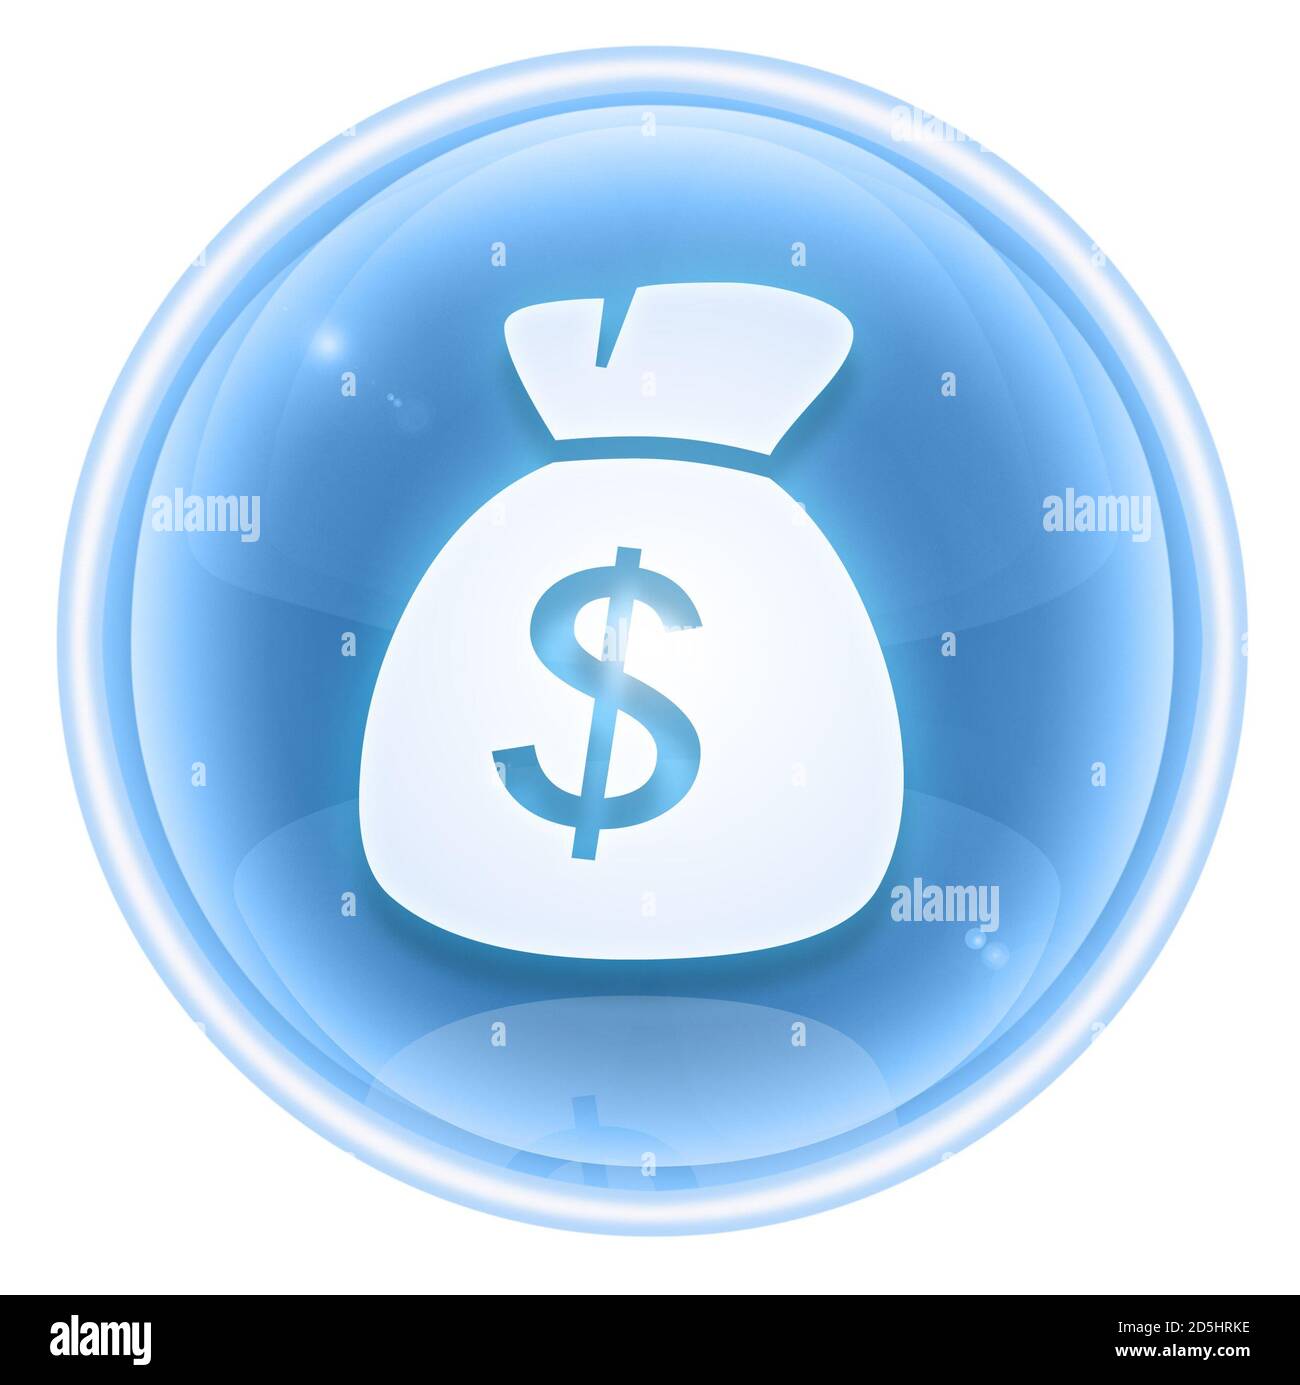 dollar icon ice, isolated on white background. Stock Photo